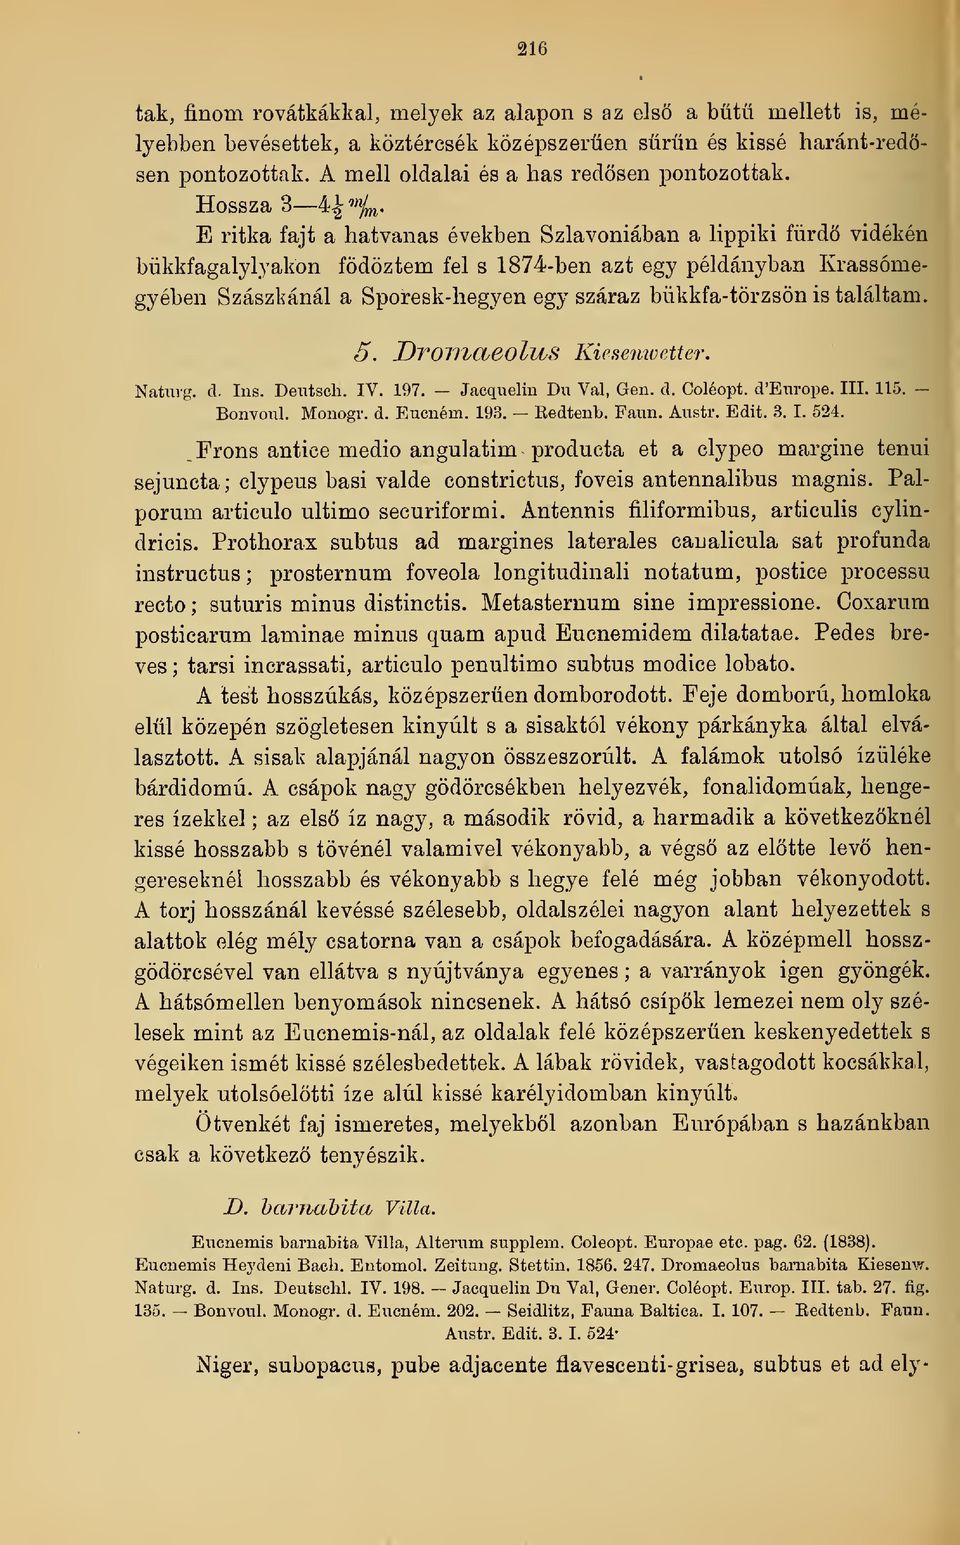 E ritka fajt a hatvanas években Szlavóniában a lippiki fürd vidékén bükkfagalylyakön fedeztem fel s 1874-ben azt egy példányban Krassómegyében Szászkánál a Sporesk-hegyen egy száraz bükkfa-törzsön is